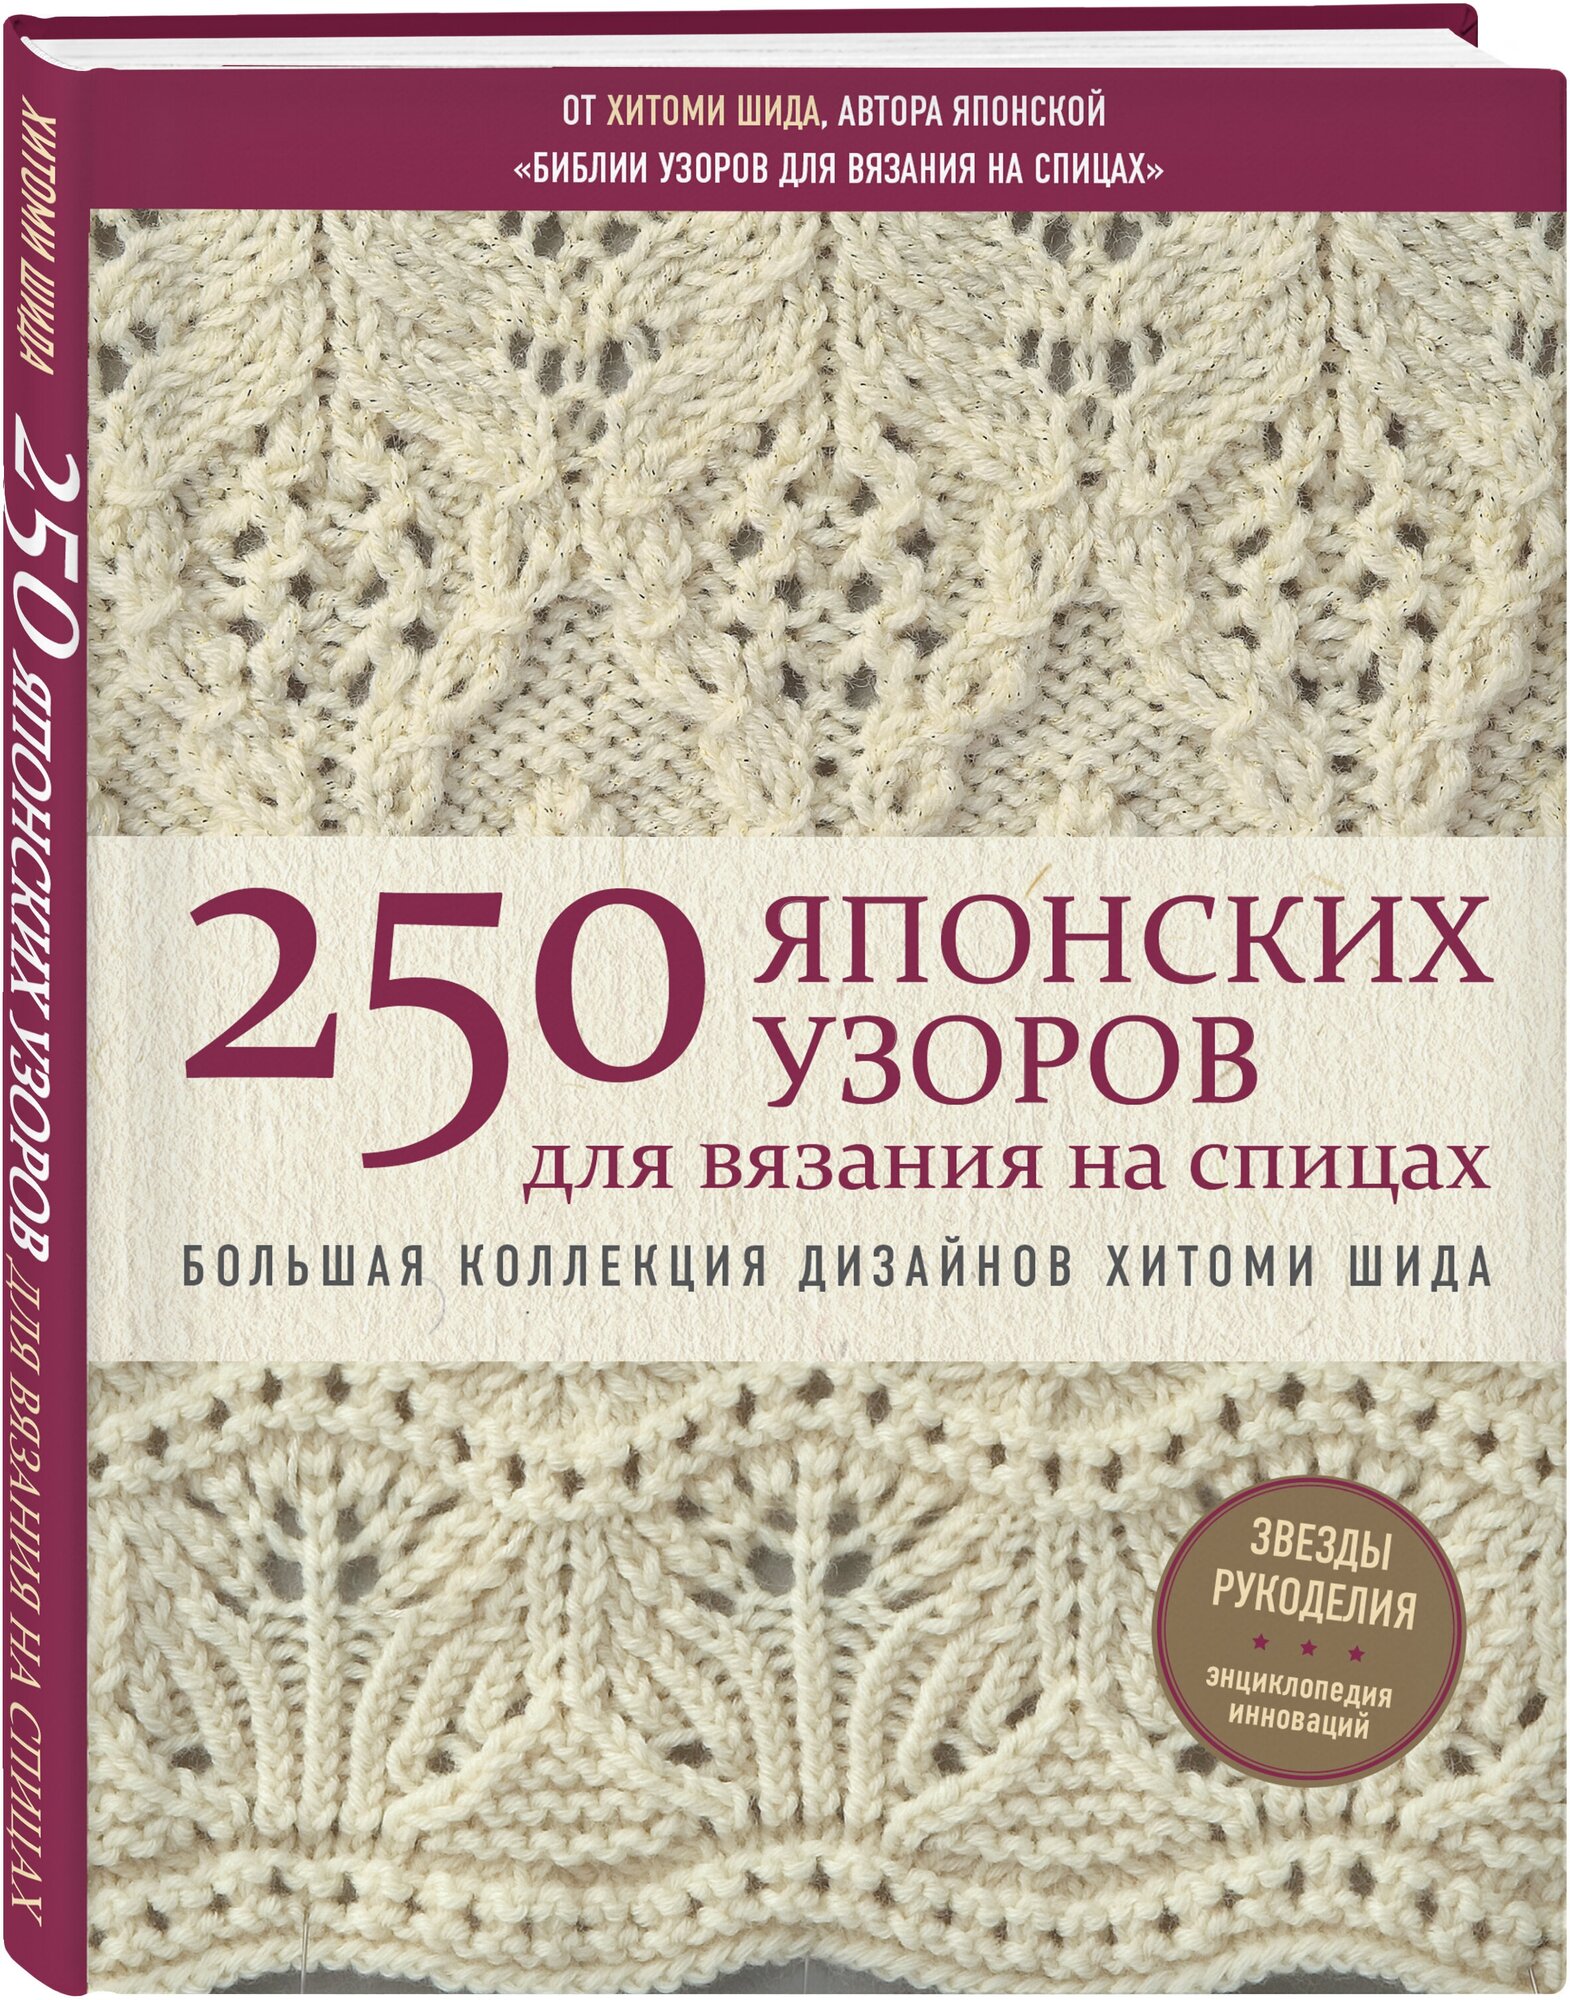 250 японских узоров для вязания на спицах. Большая коллекция дизайнов Хитоми Шида. Библия вязания - фото №1